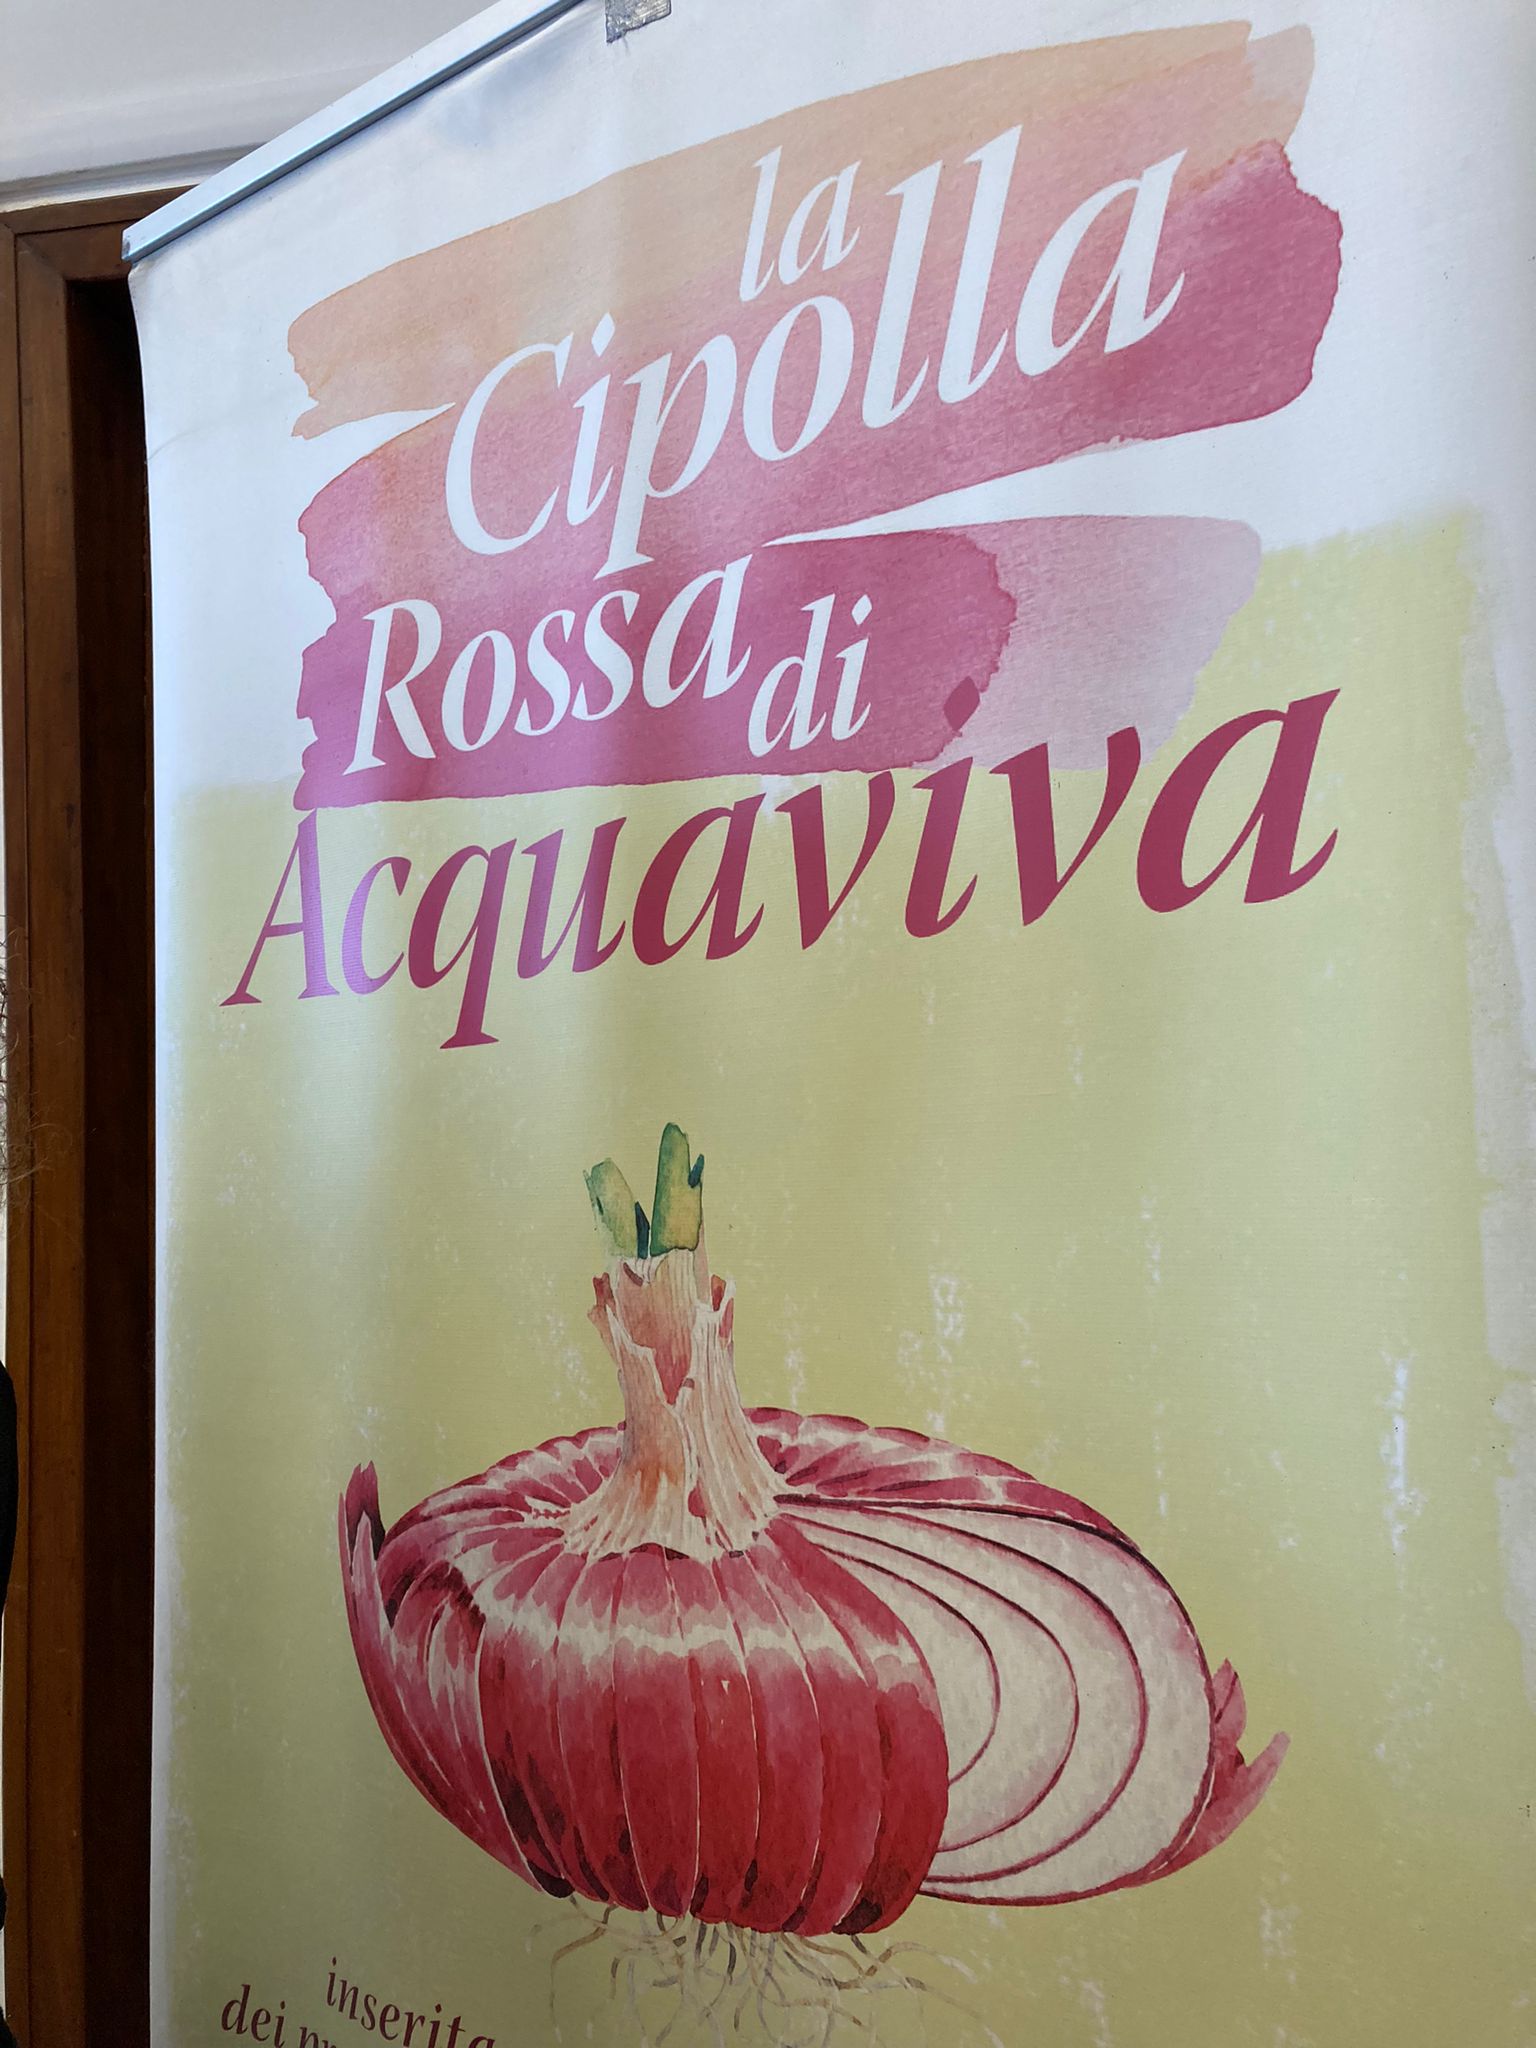 Galleria Presidìo slow food della cipolla rossa di Acquaviva delle Fonti: la celebrazione del ventennale - Diapositiva 3 di 6